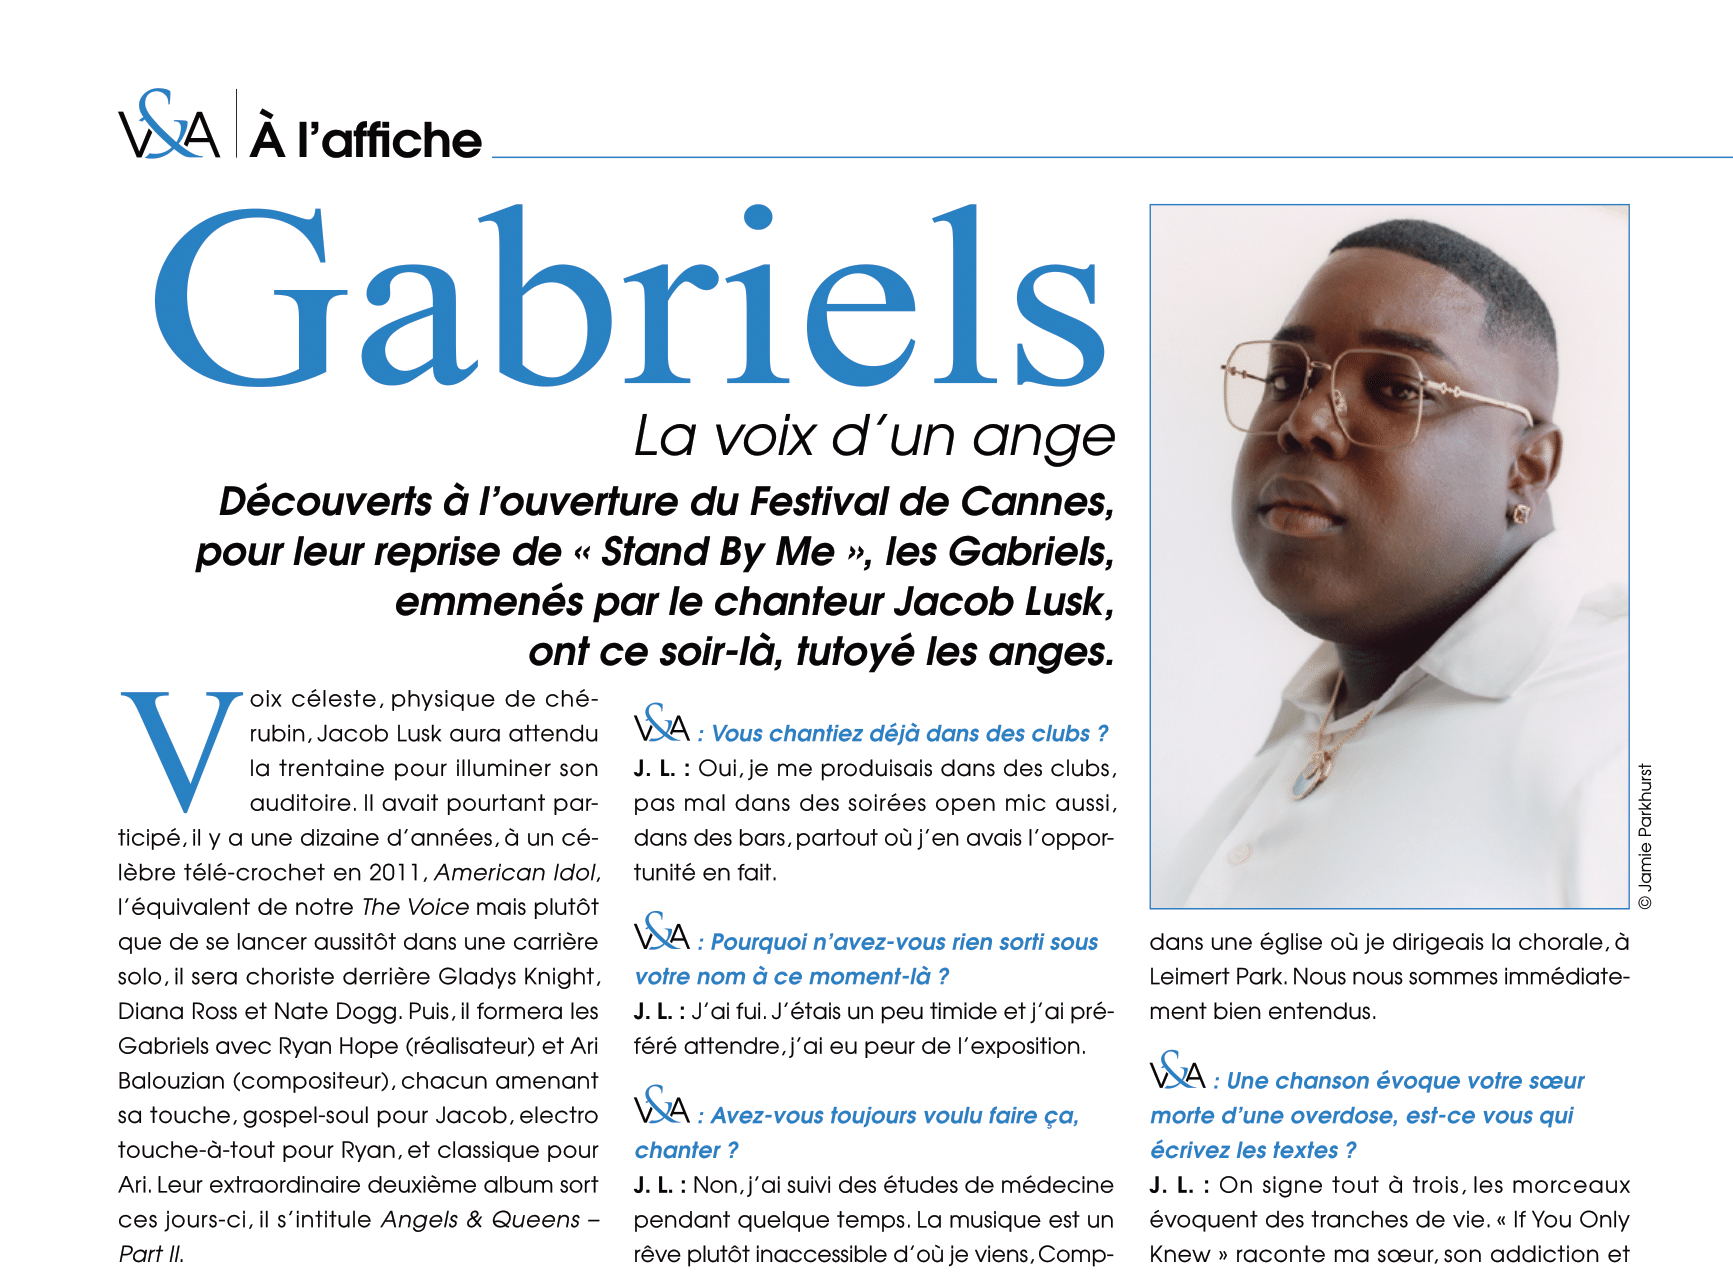 A l'affiche de Vinyle & Audio numéro 19 : Gabriels